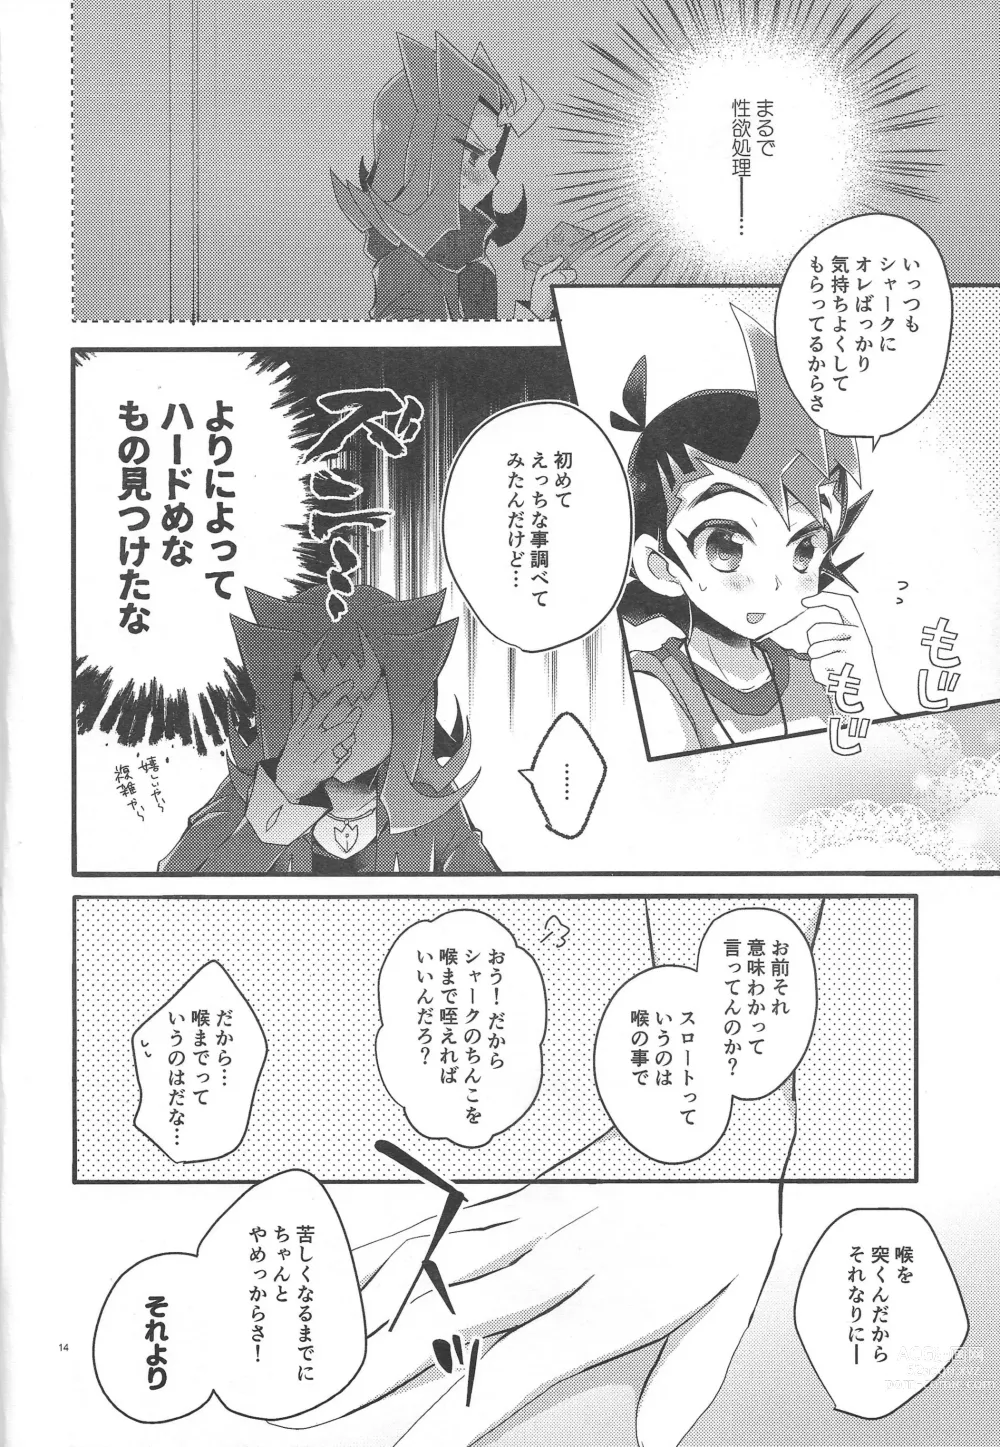 Page 13 of doujinshi Koi no nan wa ai de toke